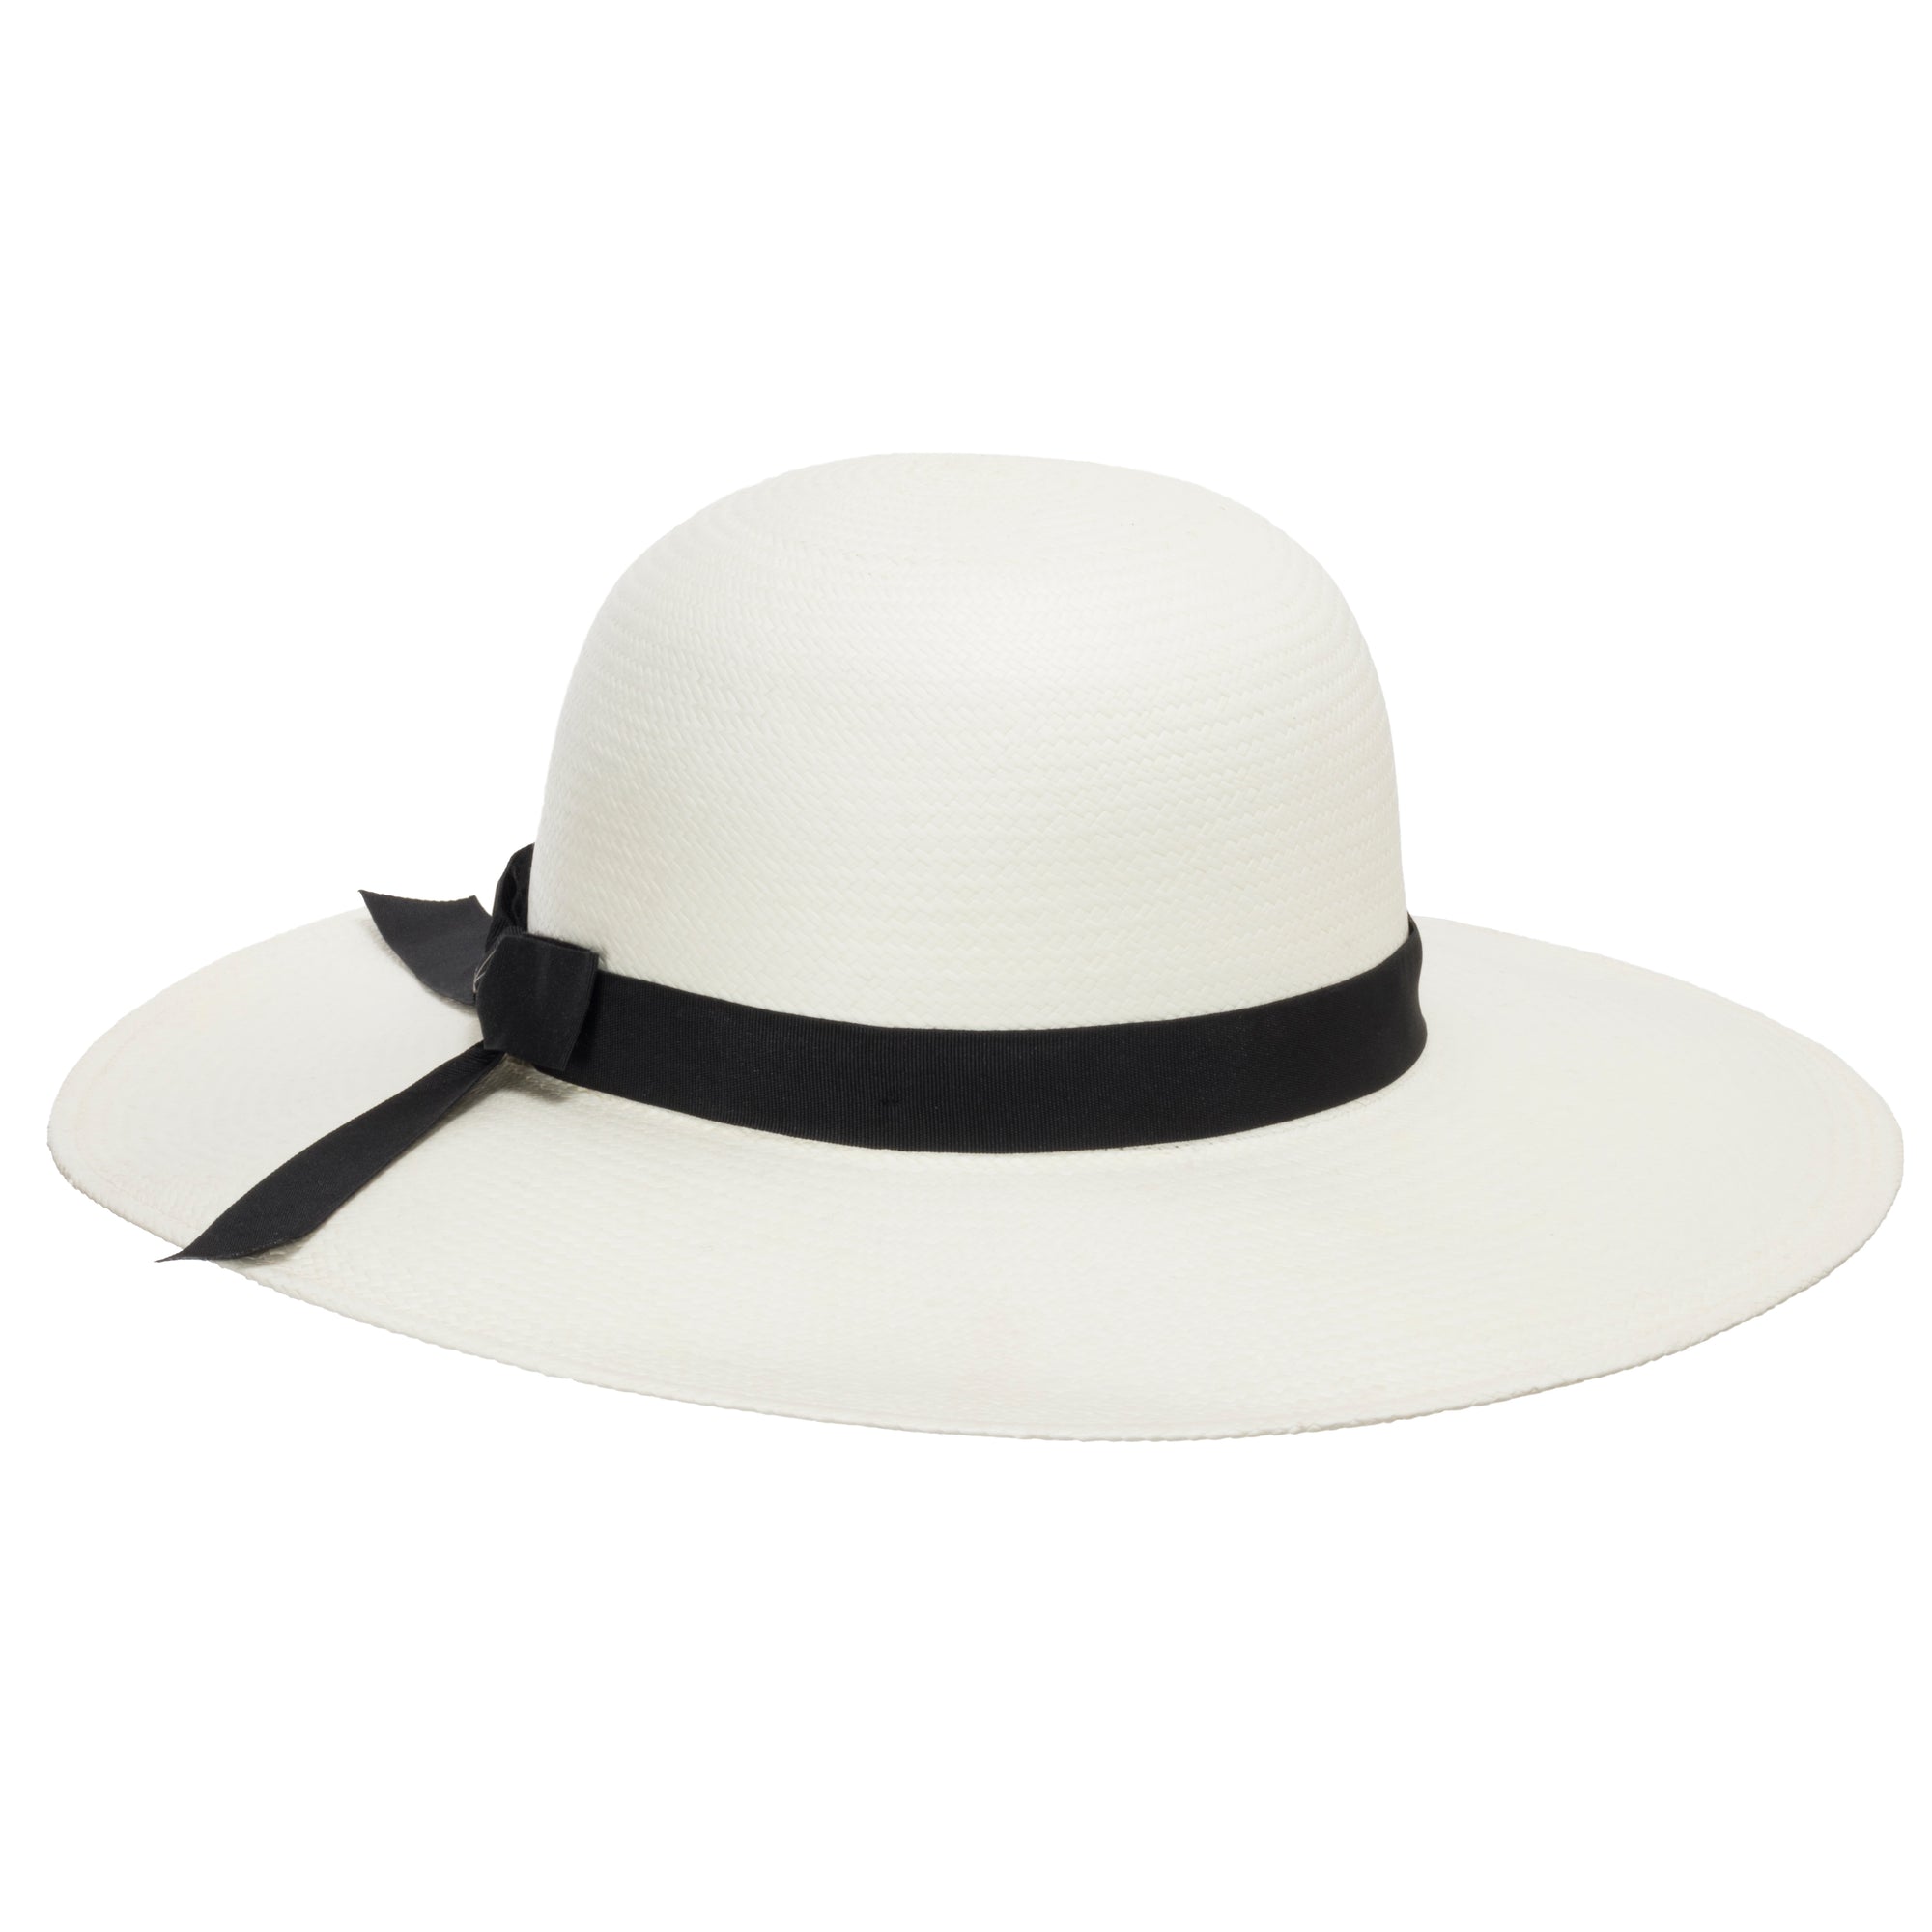 CoCopeaunt HT2379 Men Women Summer Sun Hat Breathable Mesh Cap